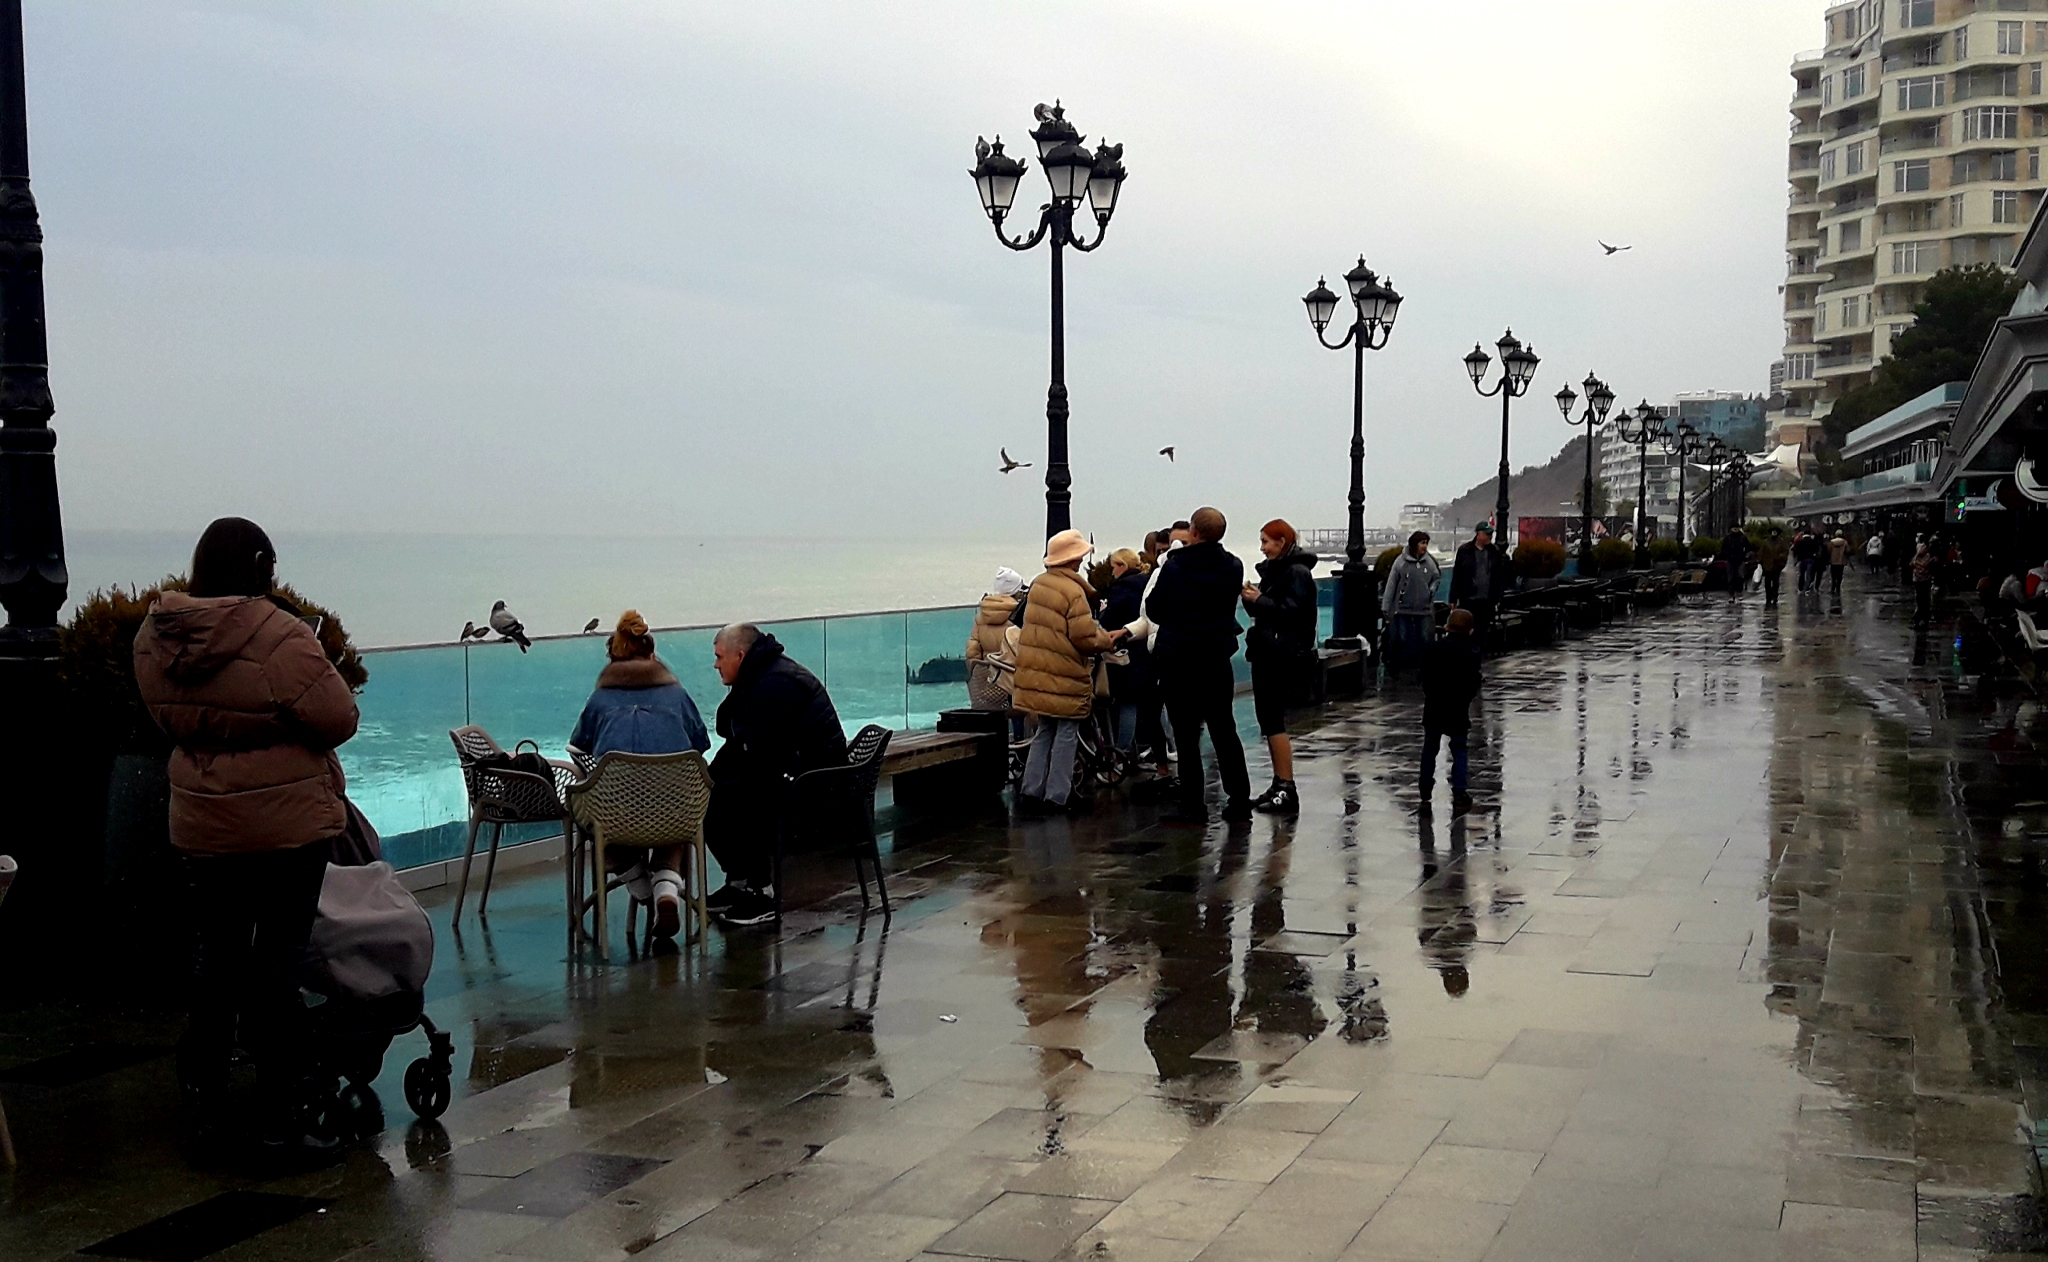 Несмотря на мелкий осенний дождик, столики кафе на Набережной не пустуют. А во врем новогодних каникул здесь будет не присесть